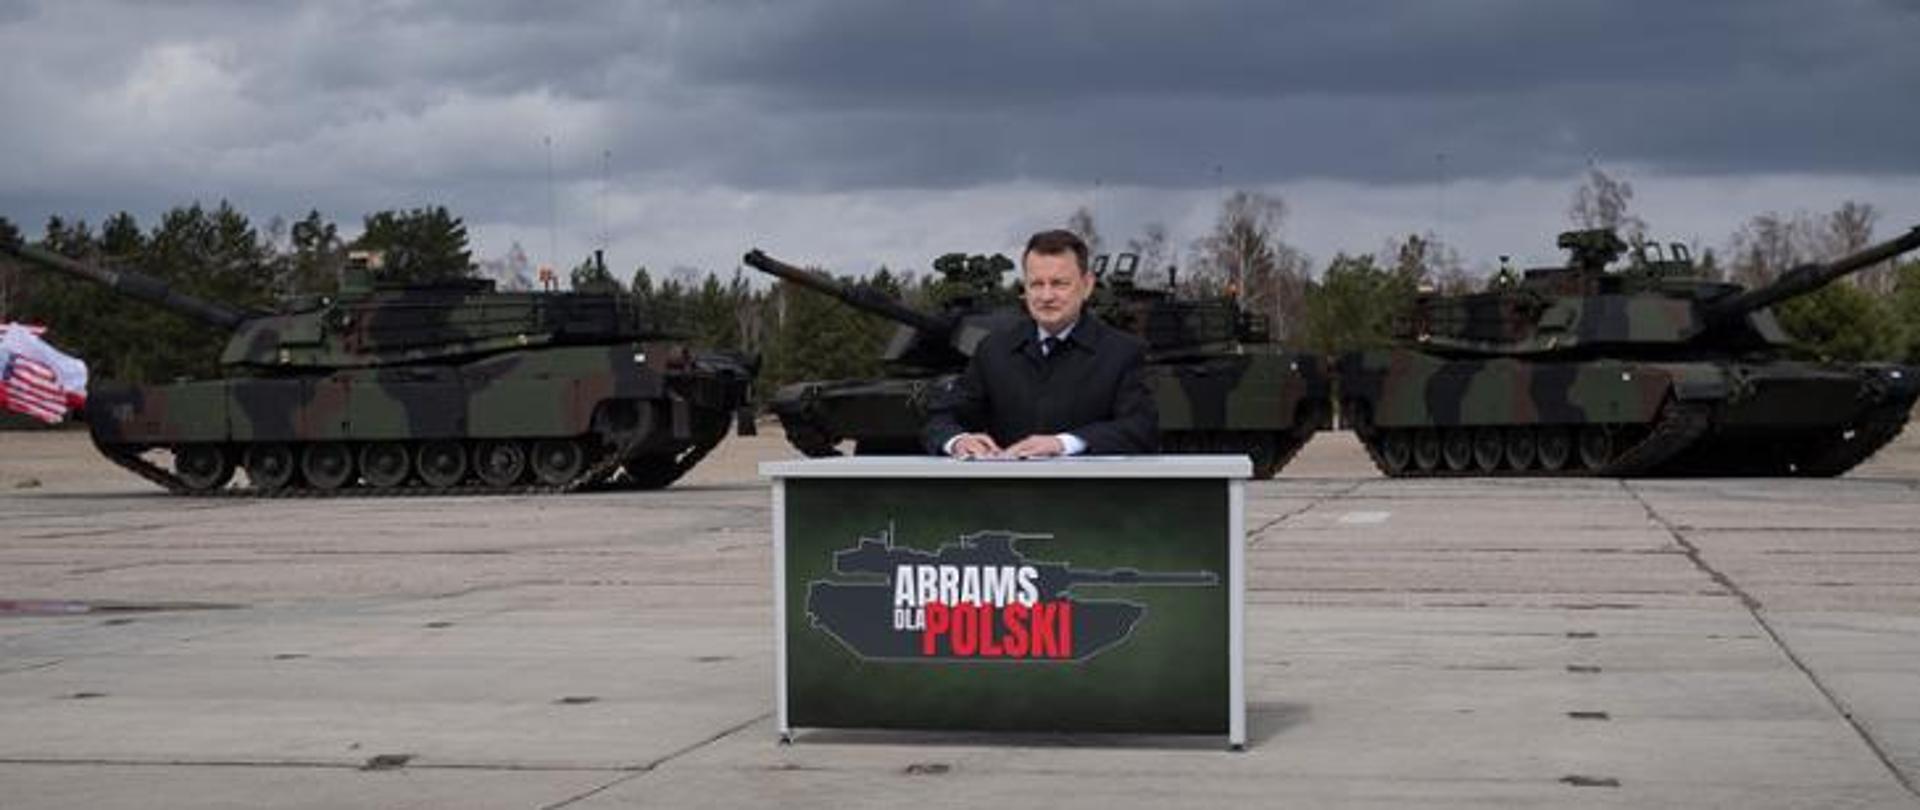 Abrams for Poland